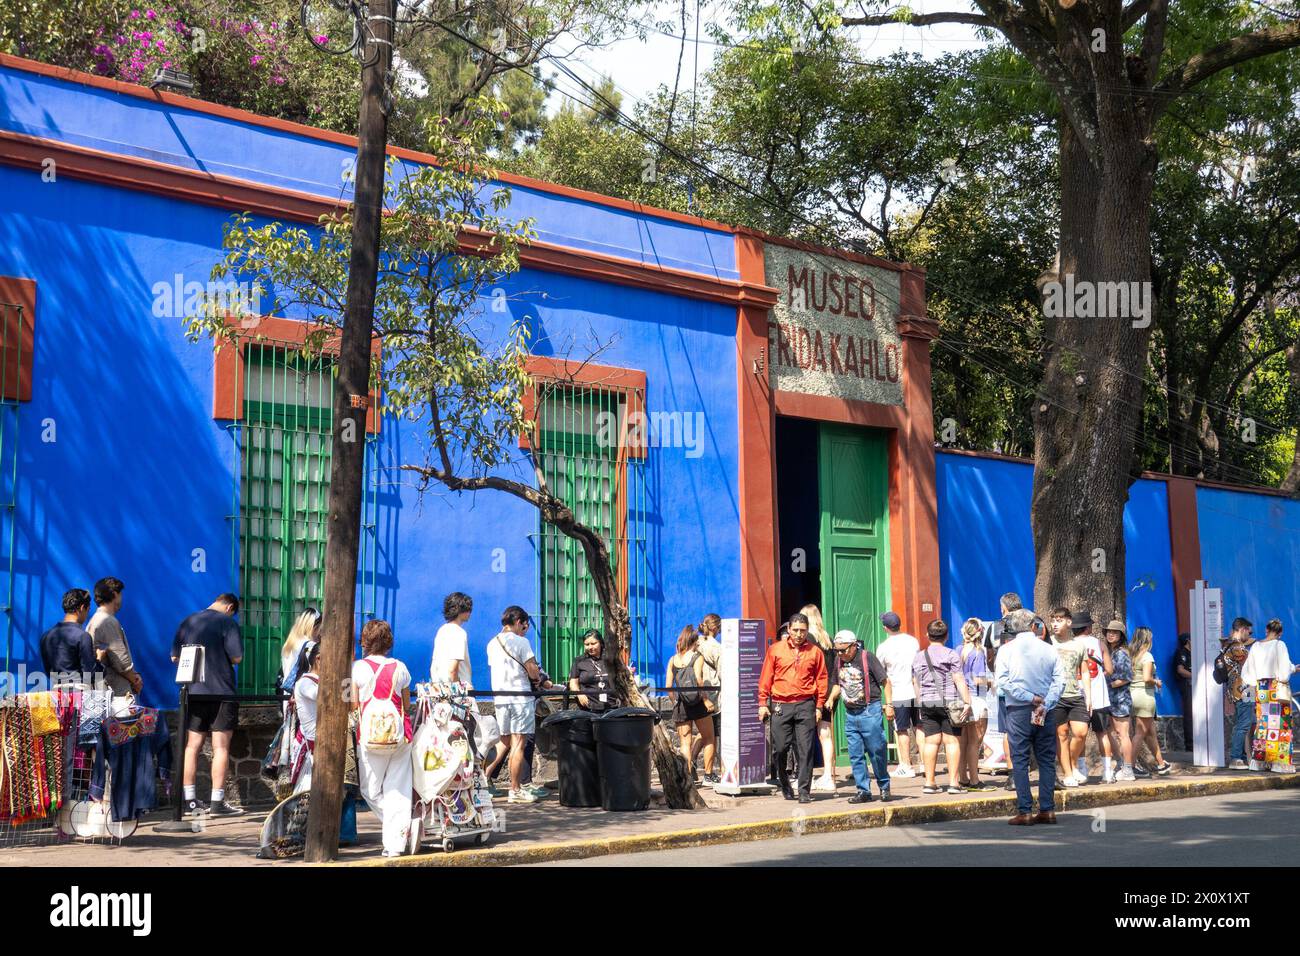 Besucher warten in der Warteschlange vor dem Frida Kahlo Blue House Museum. Das Frida Kahlo Blue House Museum in Mexiko-Stadt ist die ehemalige Heimat der berühmten Künstlerin Frida Kahlo. Es bietet Besuchern einen Einblick in Kahlos Leben und Kunst und zeigt ihre persönlichen Gegenstände, Kunstwerke und die lebendige Atmosphäre, die ihre ikonischen Werke inspiriert hat. Stockfoto